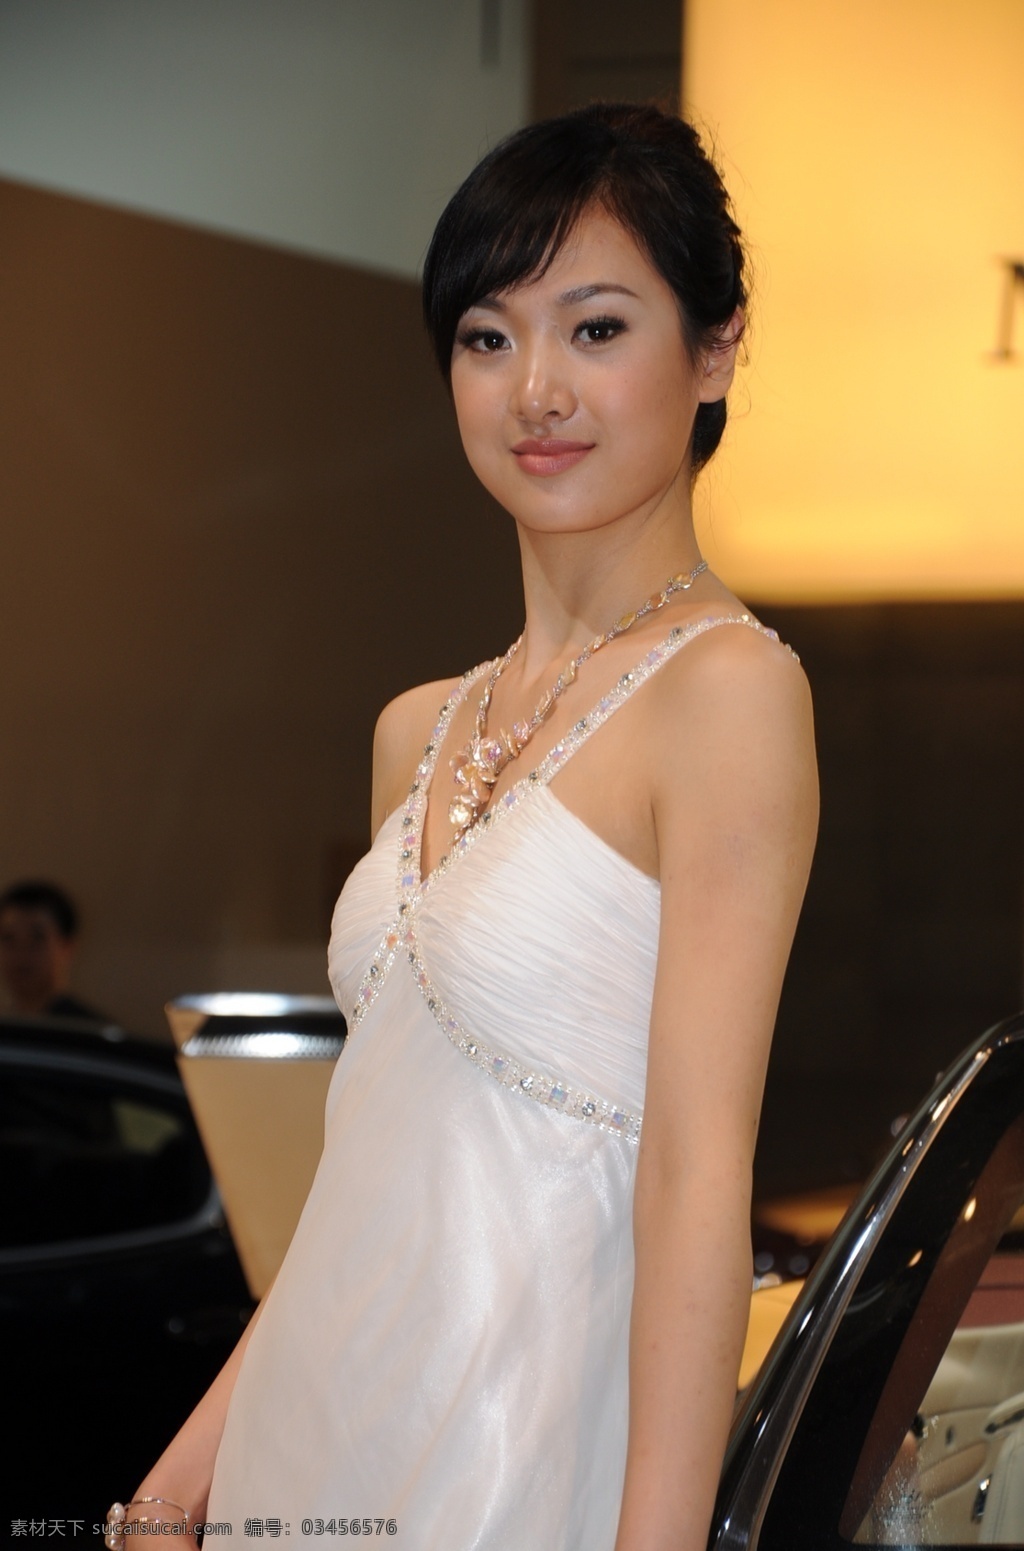 2010 年 北京 车展 玛莎拉蒂车模 韩璐 超级名模 职业人物 人物图库